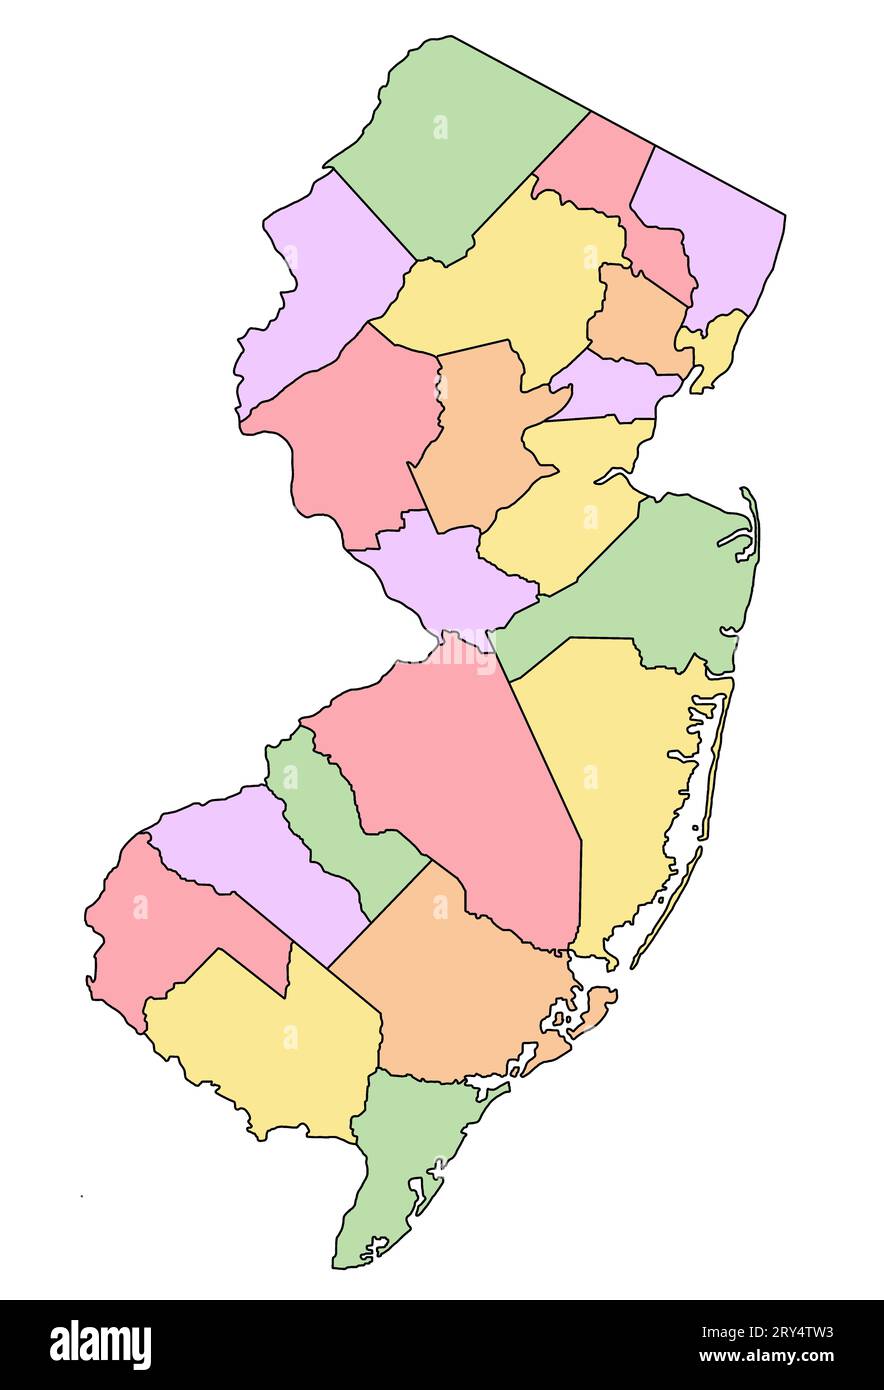 mapa administrativo de new jersey. Mapa de condados de nueva Jersey con diferentes colores, mapa en blanco, mapa vacío de nueva Jersey. Foto de stock